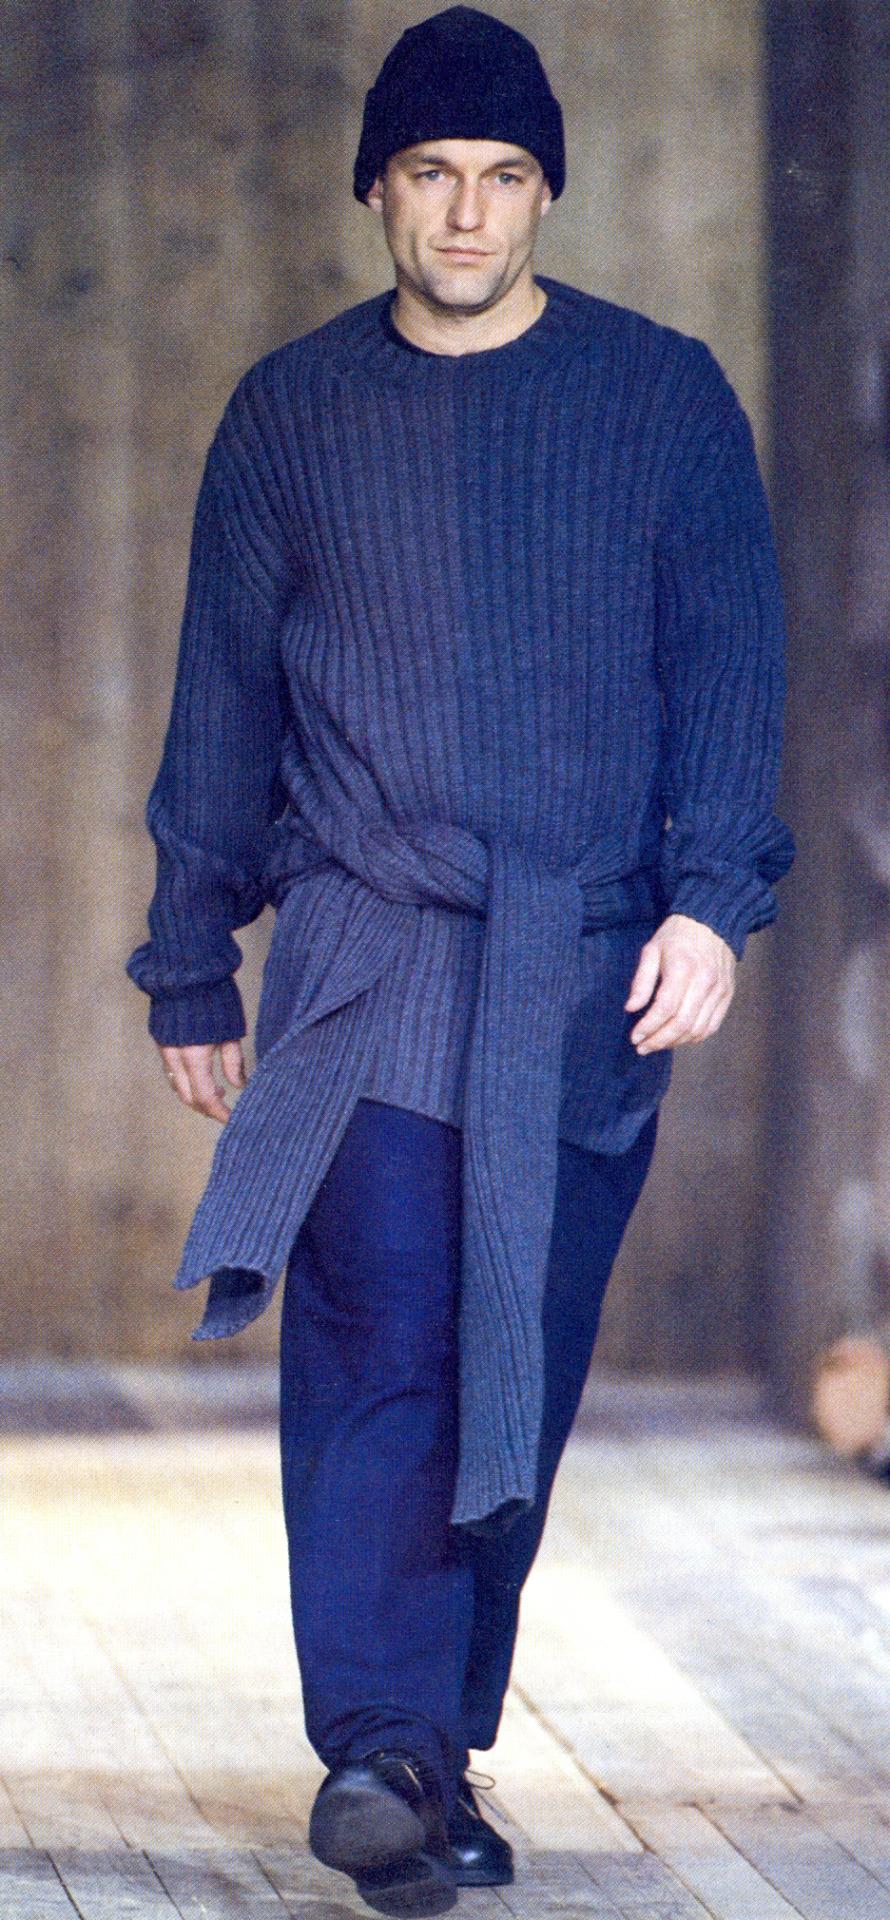 ▪ Yohji Yamamoto pull à col roulé en maille grise
▪ 100% laine
Quatre manches (deux se nouant autour de la taille)
▪ Taille moyenne
▪ Automne-Hiver 1992
